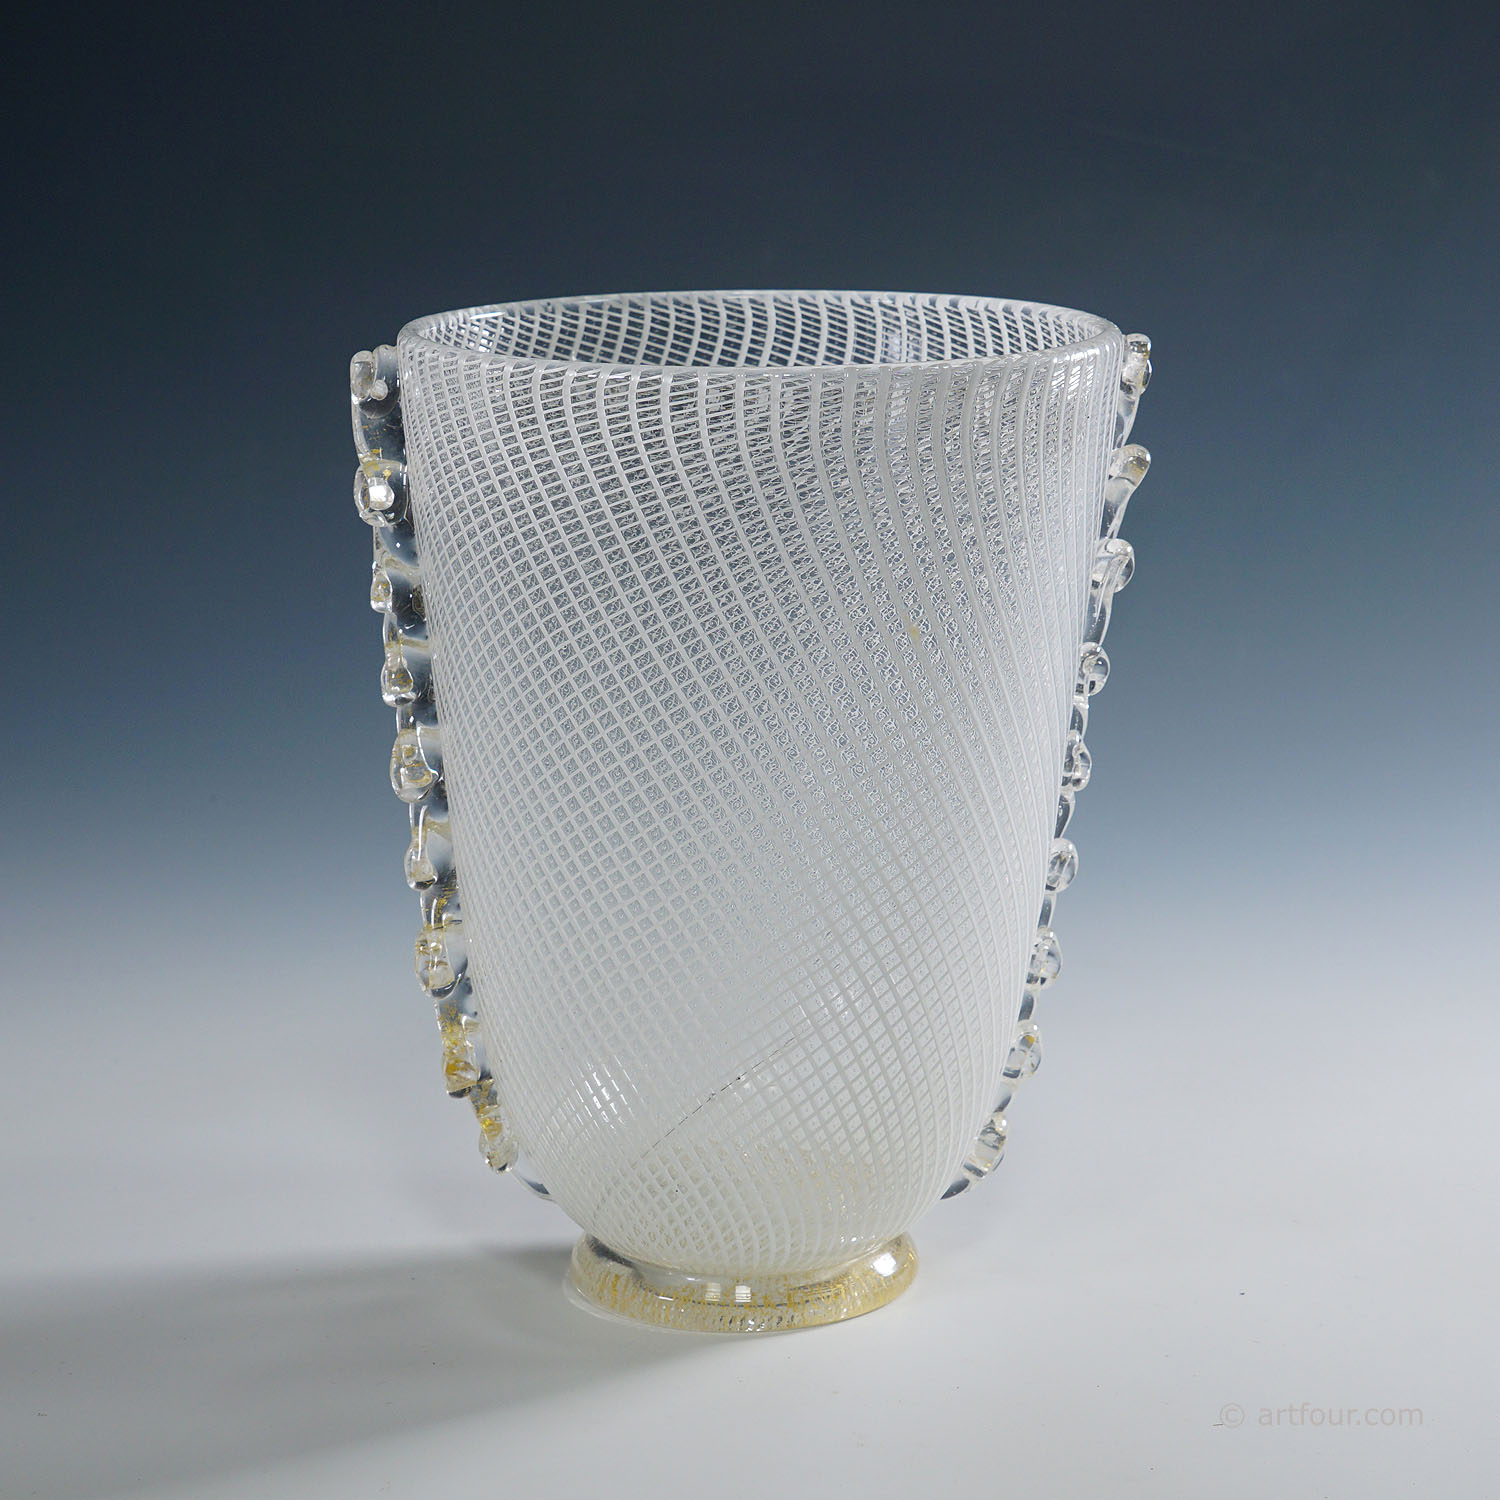 Reticello Art Glass Vase by Dino Martens for Aureliano Toso (attr.) Murano ca. 1950s